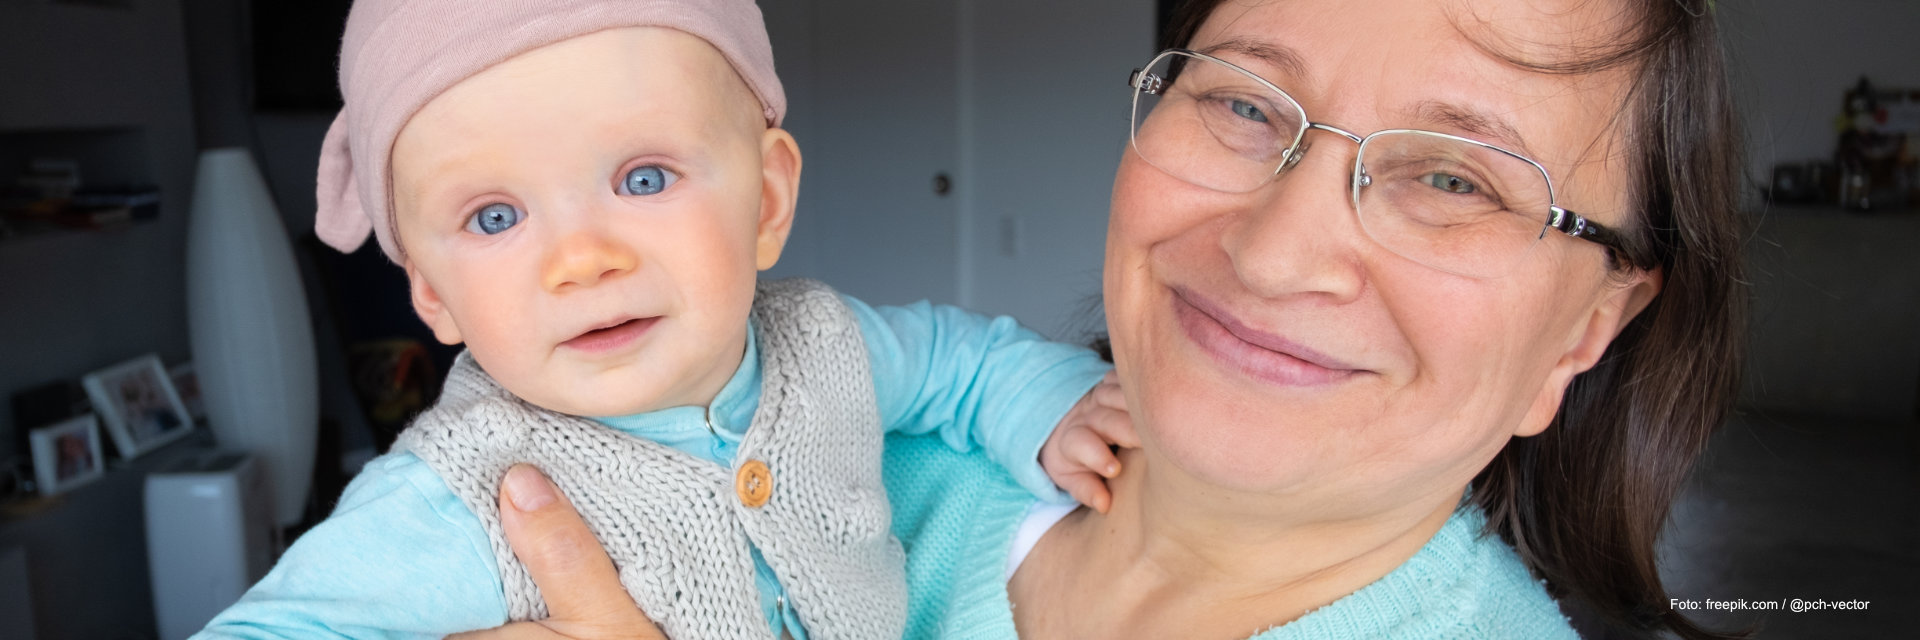 Eine Seniorin hält ein Baby im Arm, beide lachen in die Kamera.